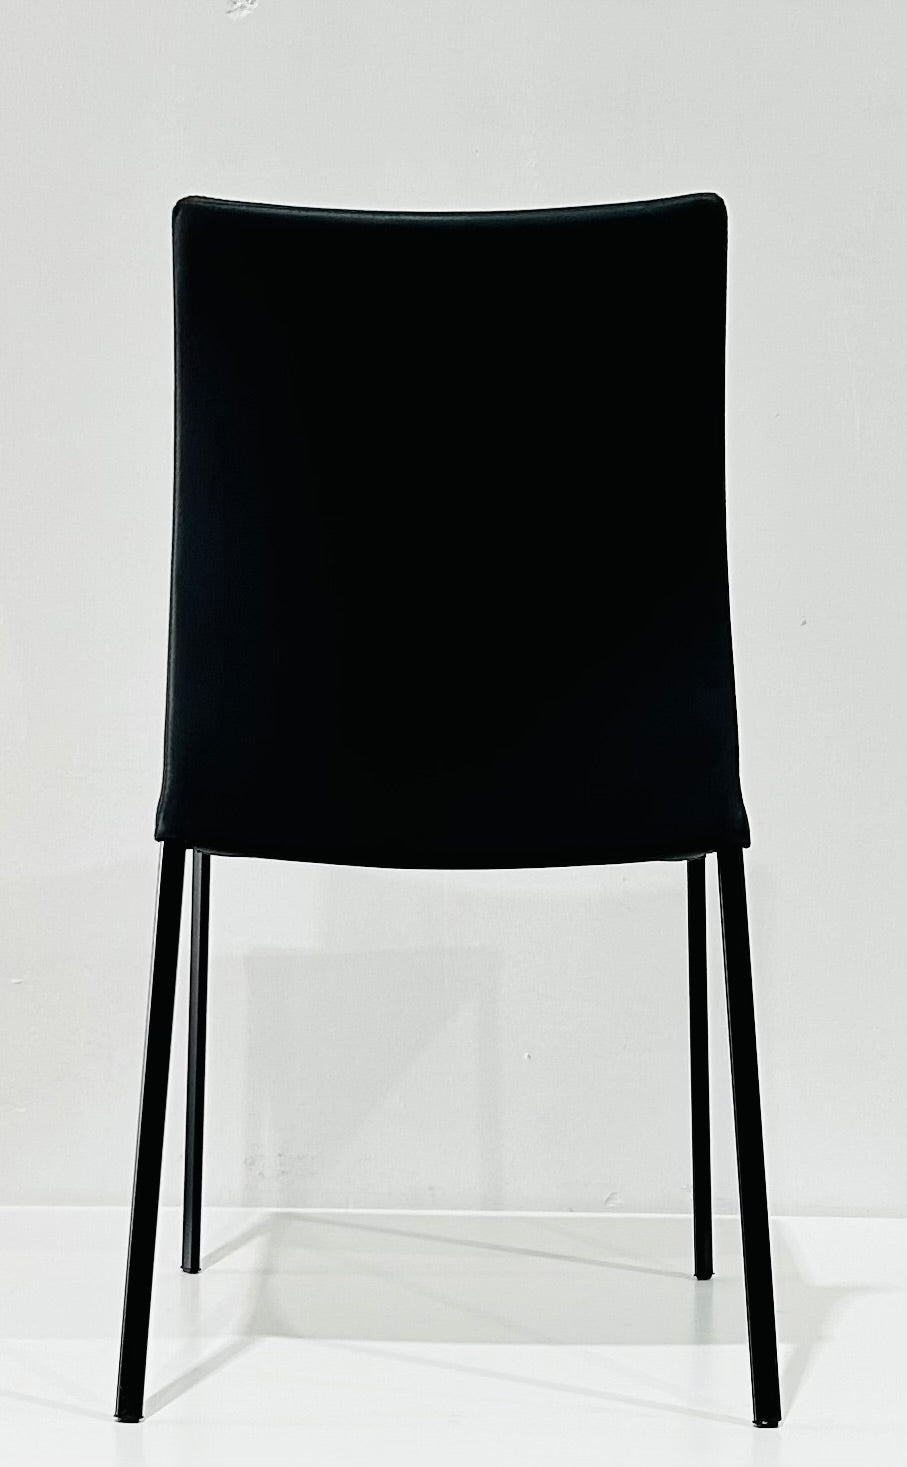 Draenert - Nobile Soft Dining Chair